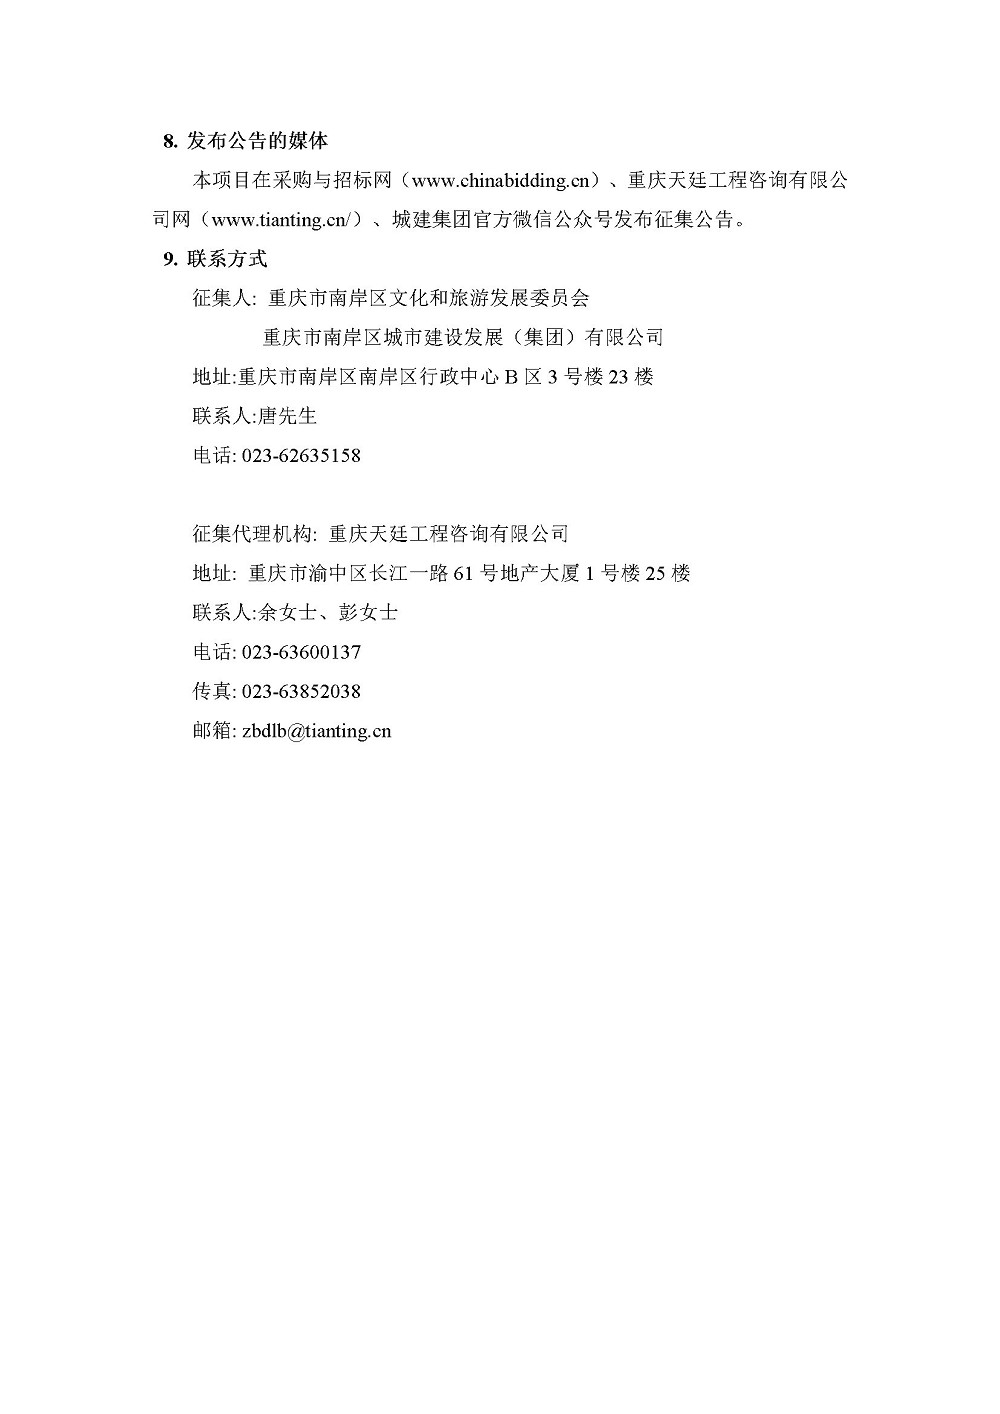 20200922南岸区黄桷湾大景区总体策划征集文件资格预审公告-发布版4.jpg